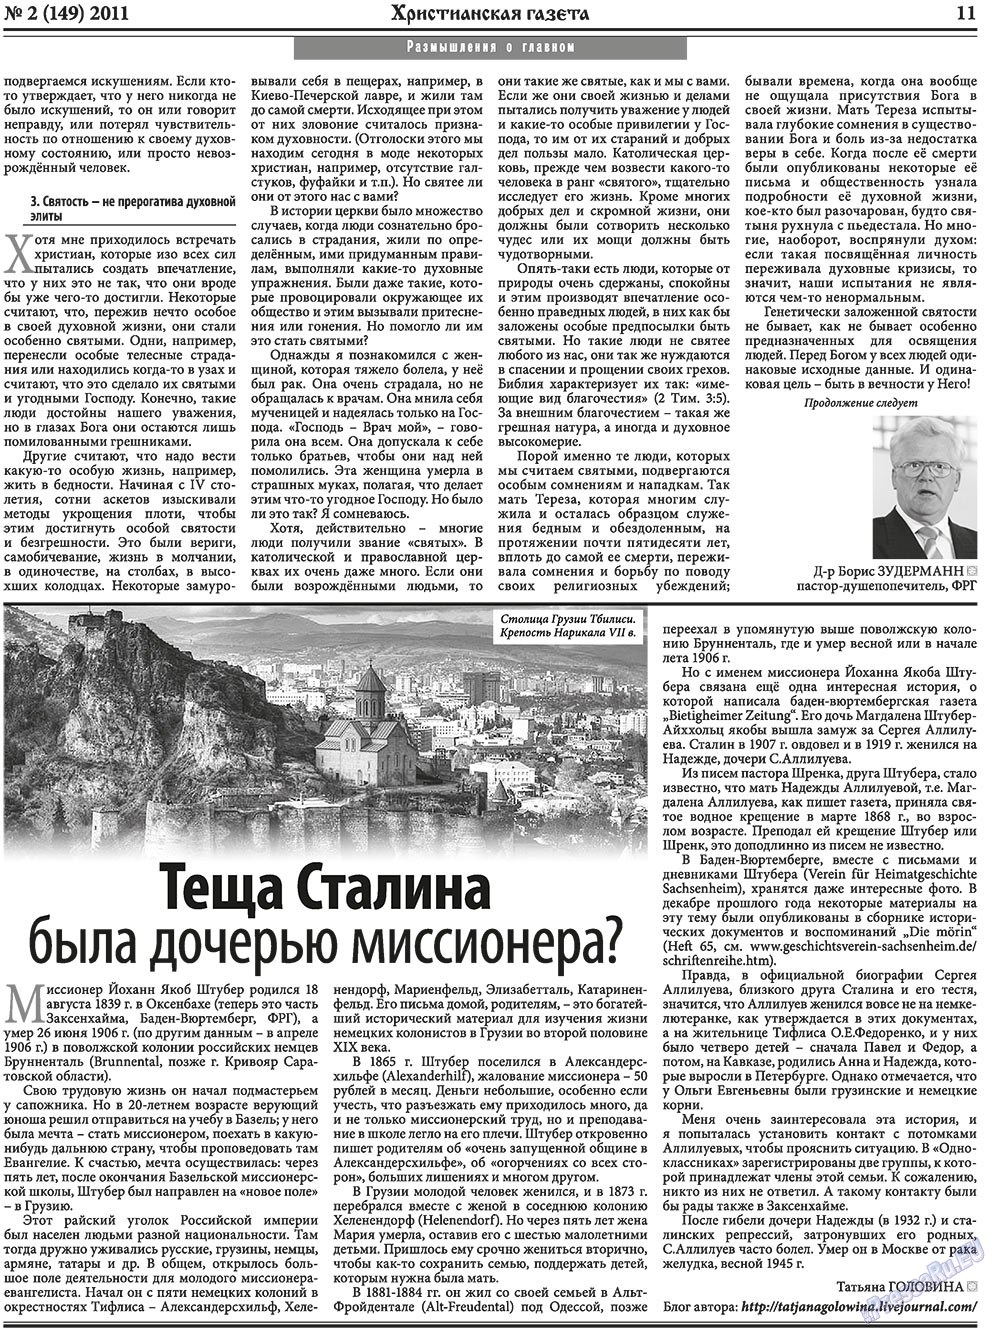 Христианская газета, газета. 2011 №2 стр.11